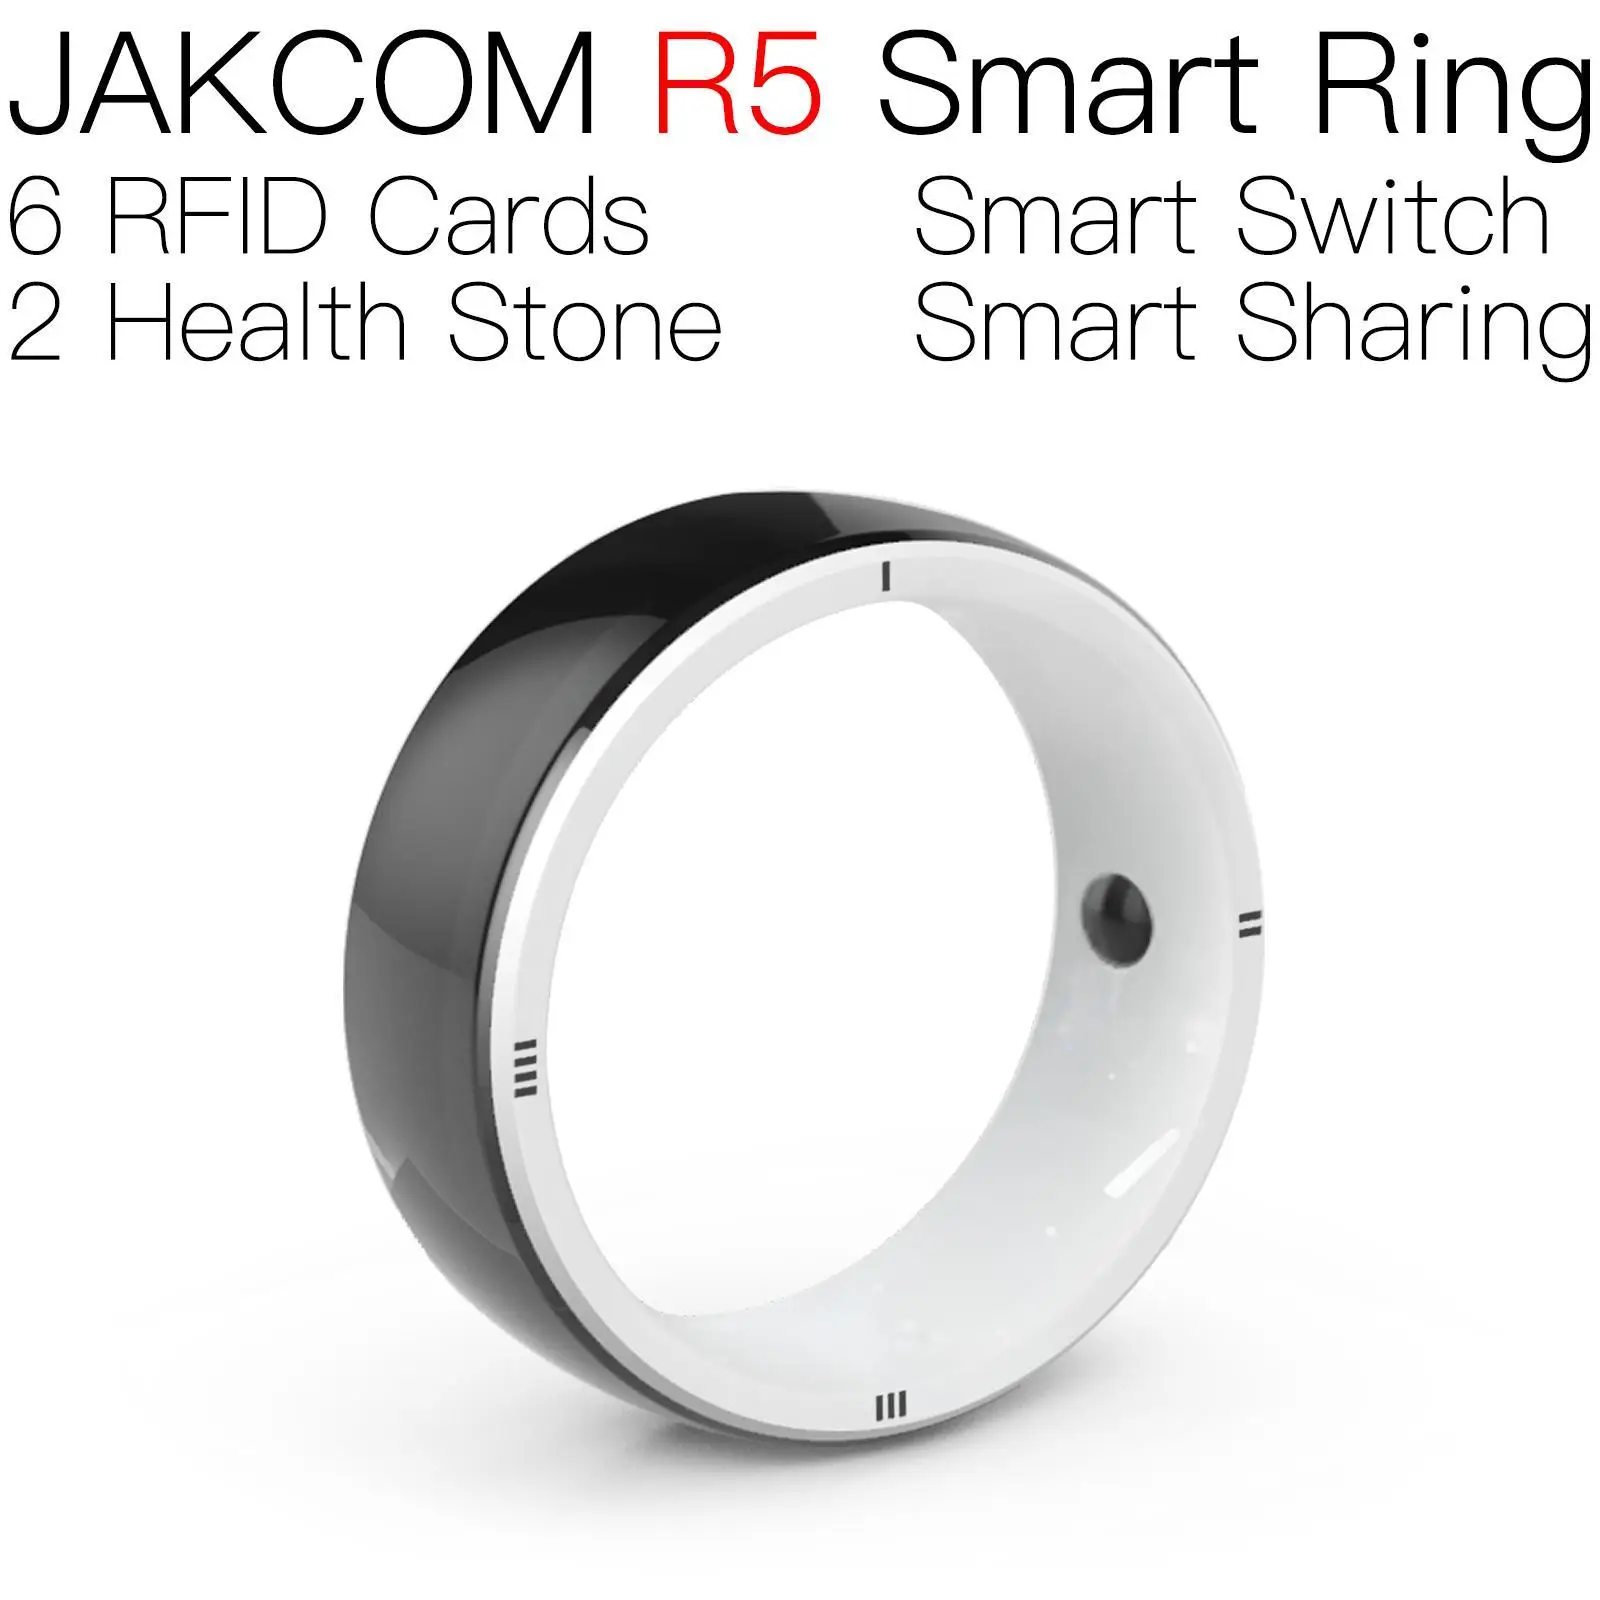 jakcom-r5-anillo-inteligente-con-rastreador-gps-para-coche-dispositivo-de-medicion-de-la-presion-arterial-persiguiendo-f1-reloj-inteligente-telefonos-android-el-mejor-regalo